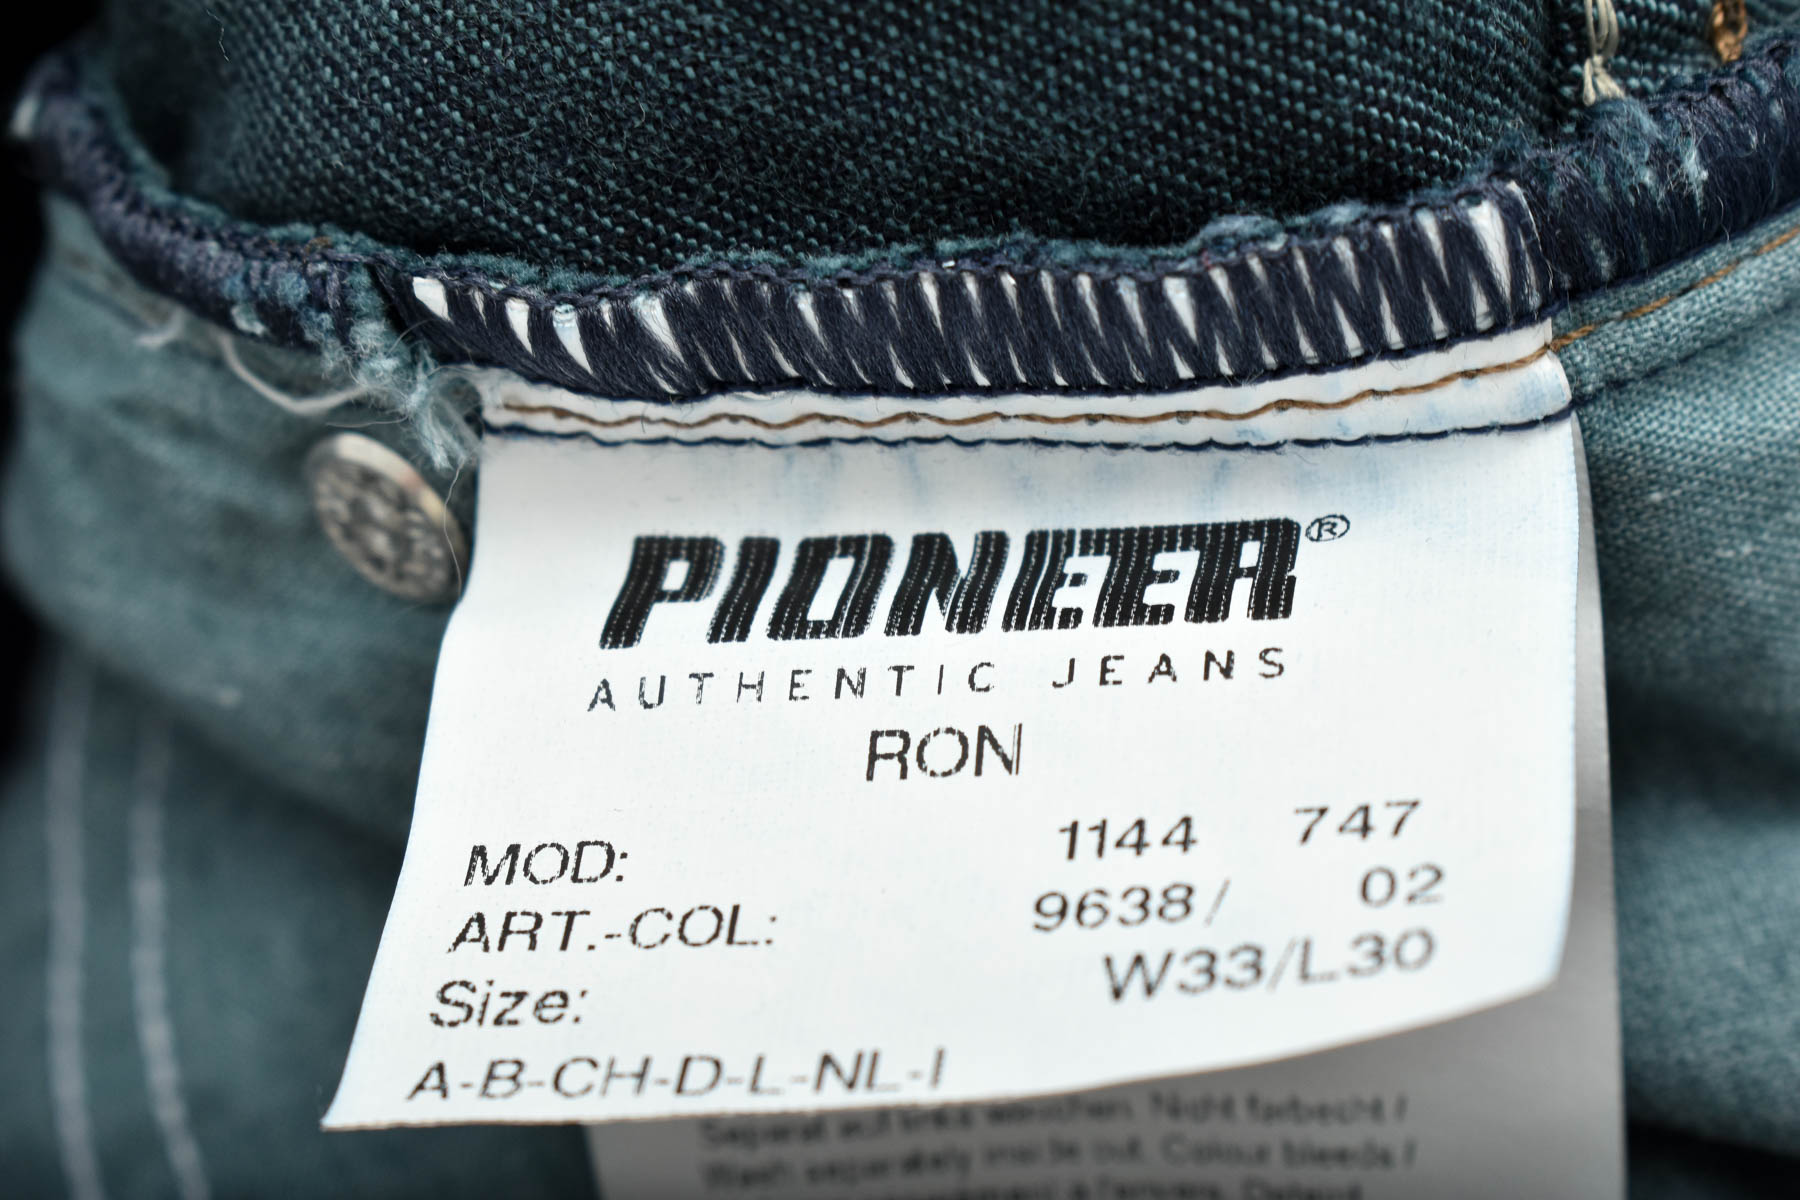 Męskie dżinsy - Pioneer - 2